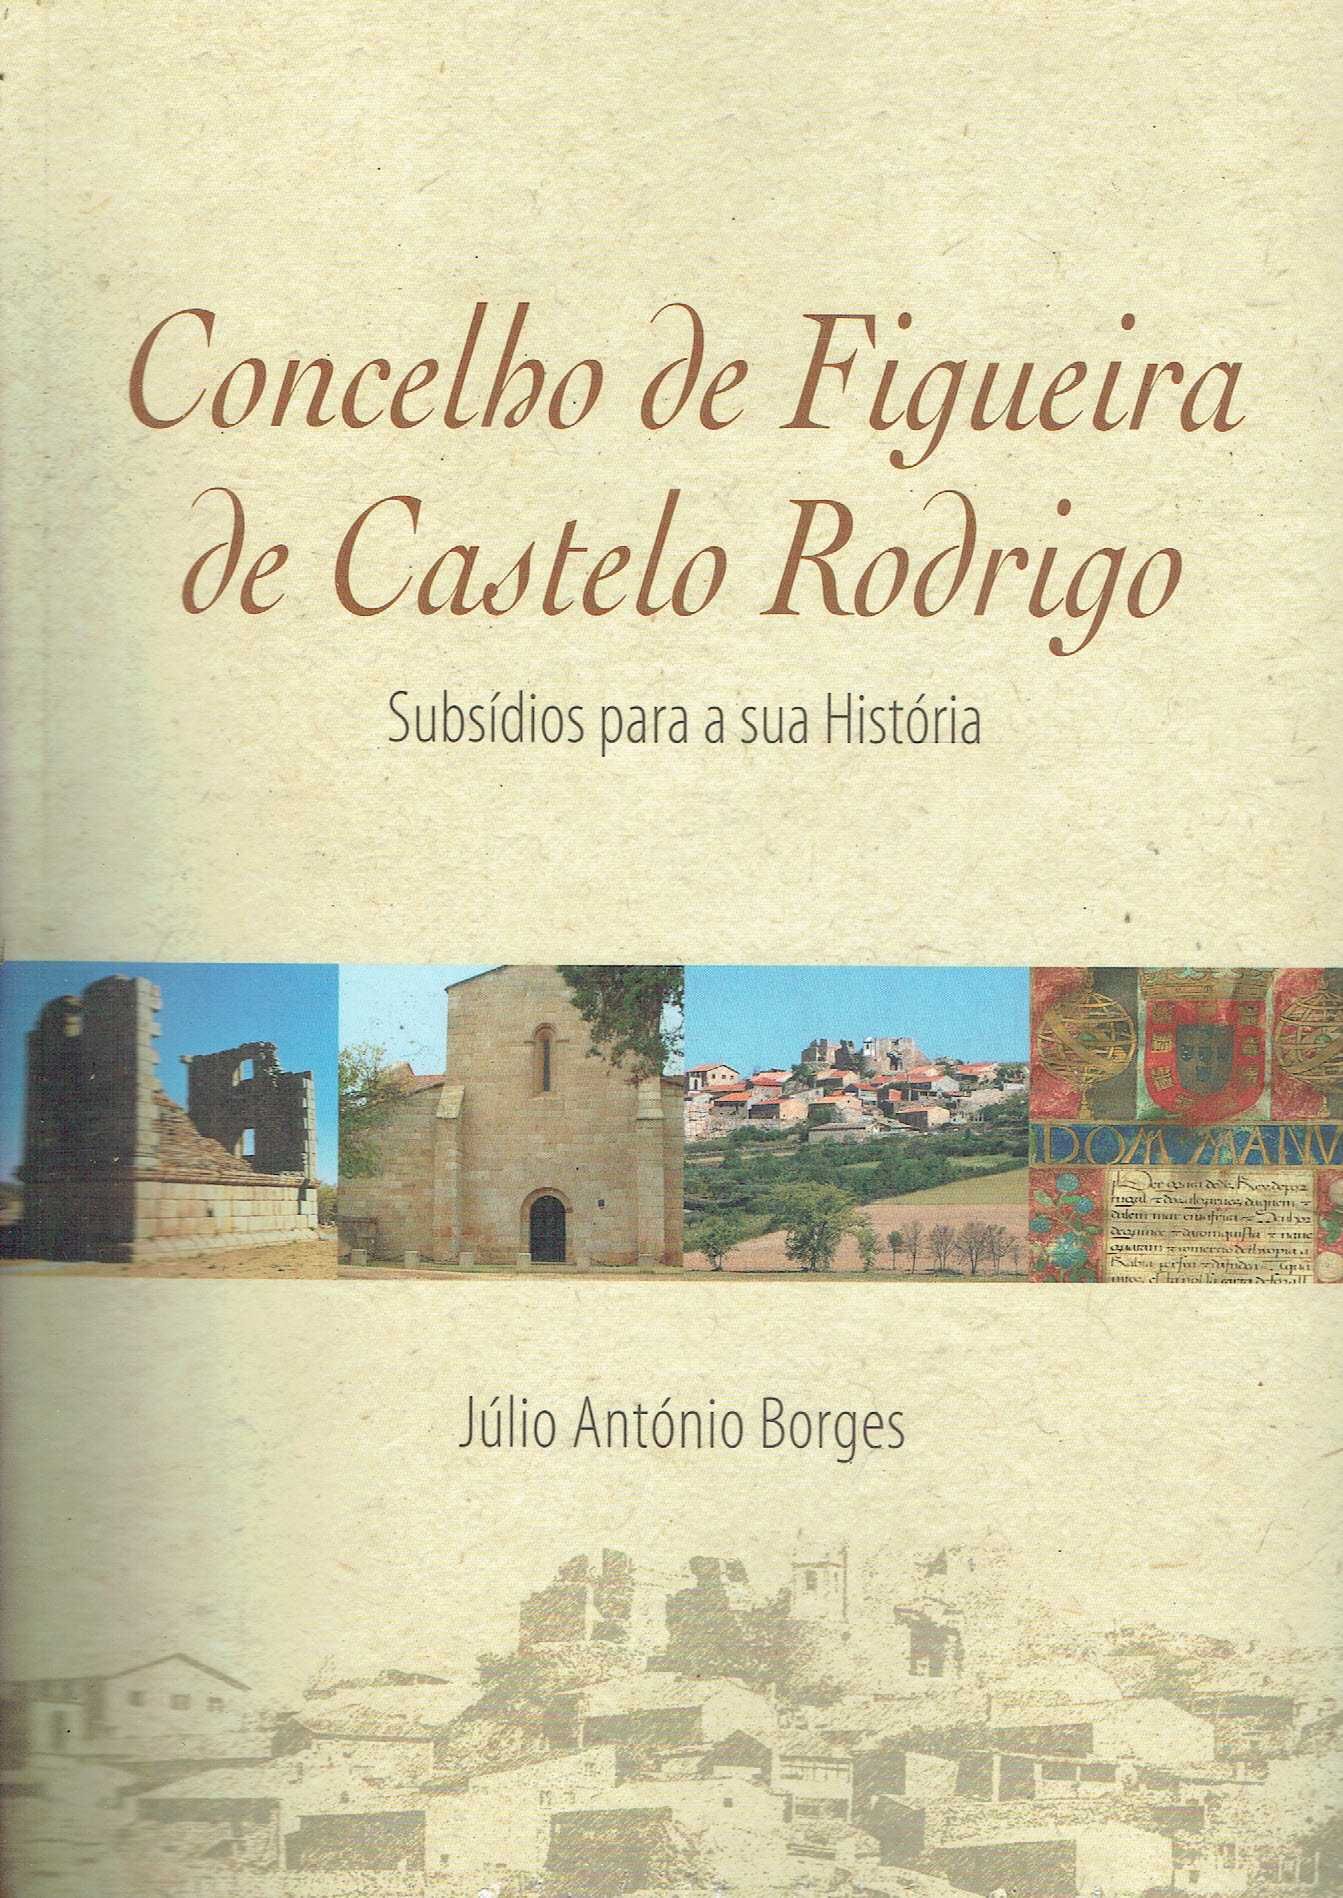 11602
Concelho de Figueira de Castelo Rodrigo: sub para a sua história